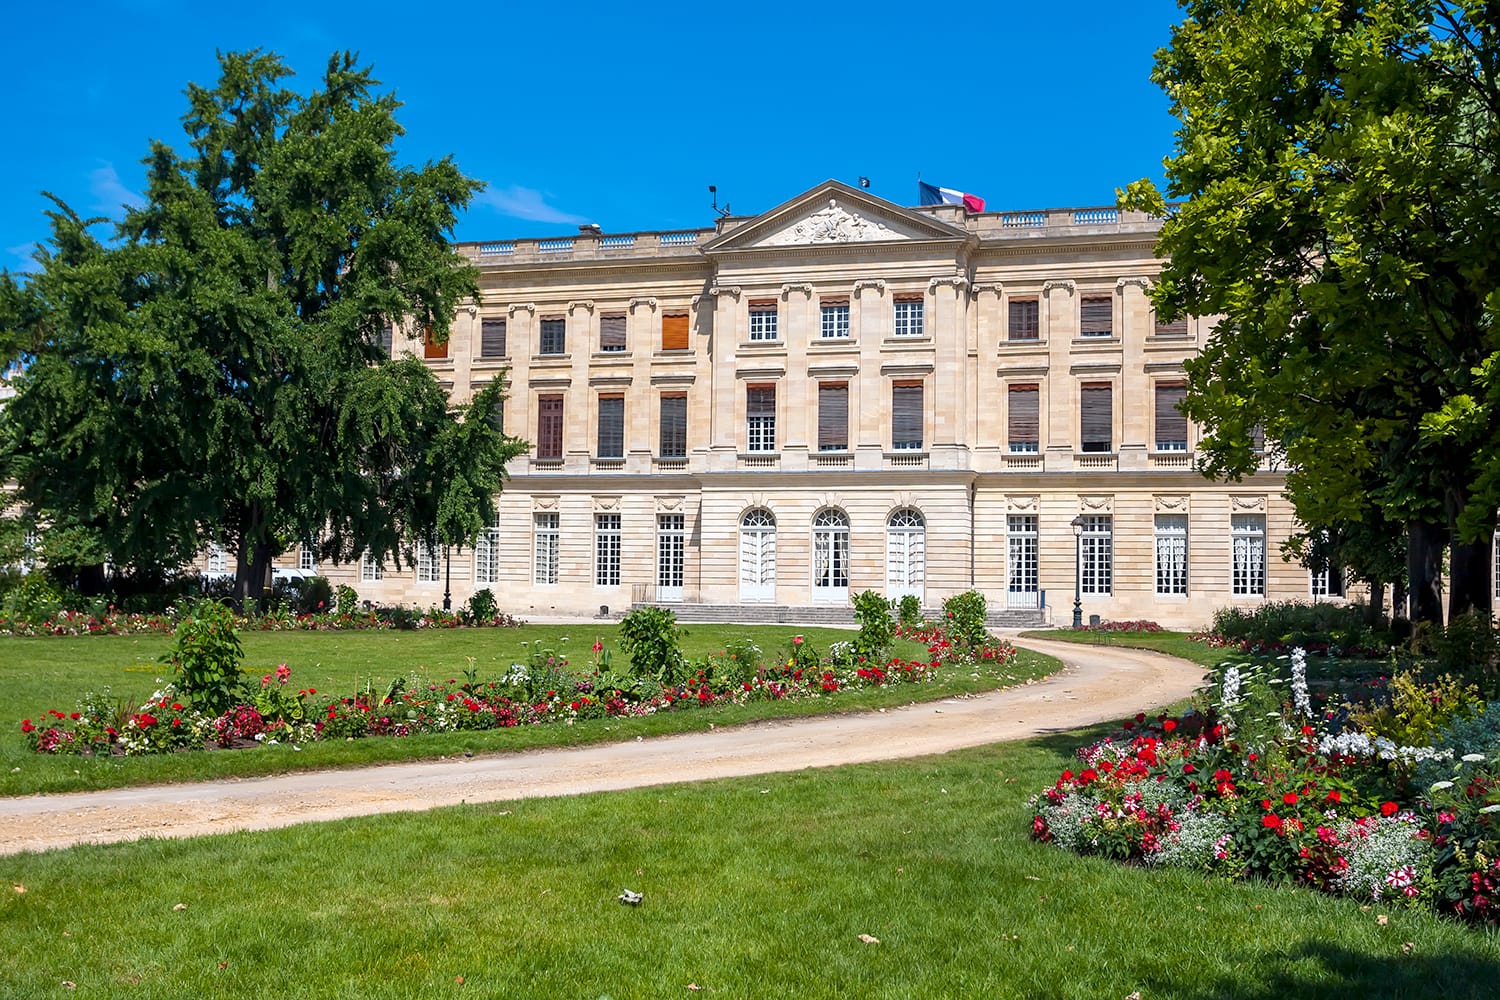 The Musee des Beaux-Arts de Bordeaux, France